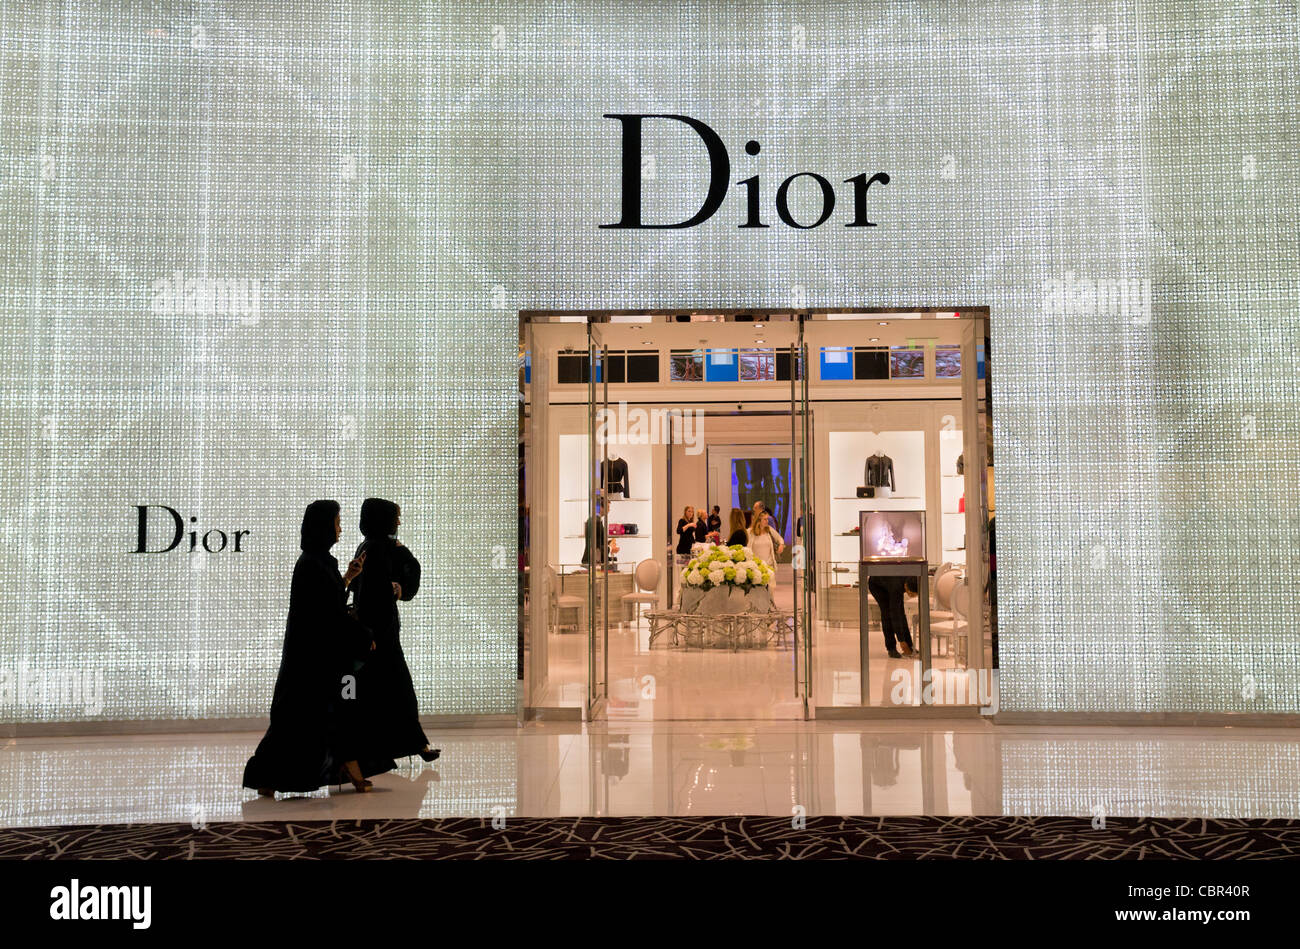 Dior speichern in der Dubai Mall in Dubai in Vereinigte Arabische Emirate  Stockfotografie - Alamy